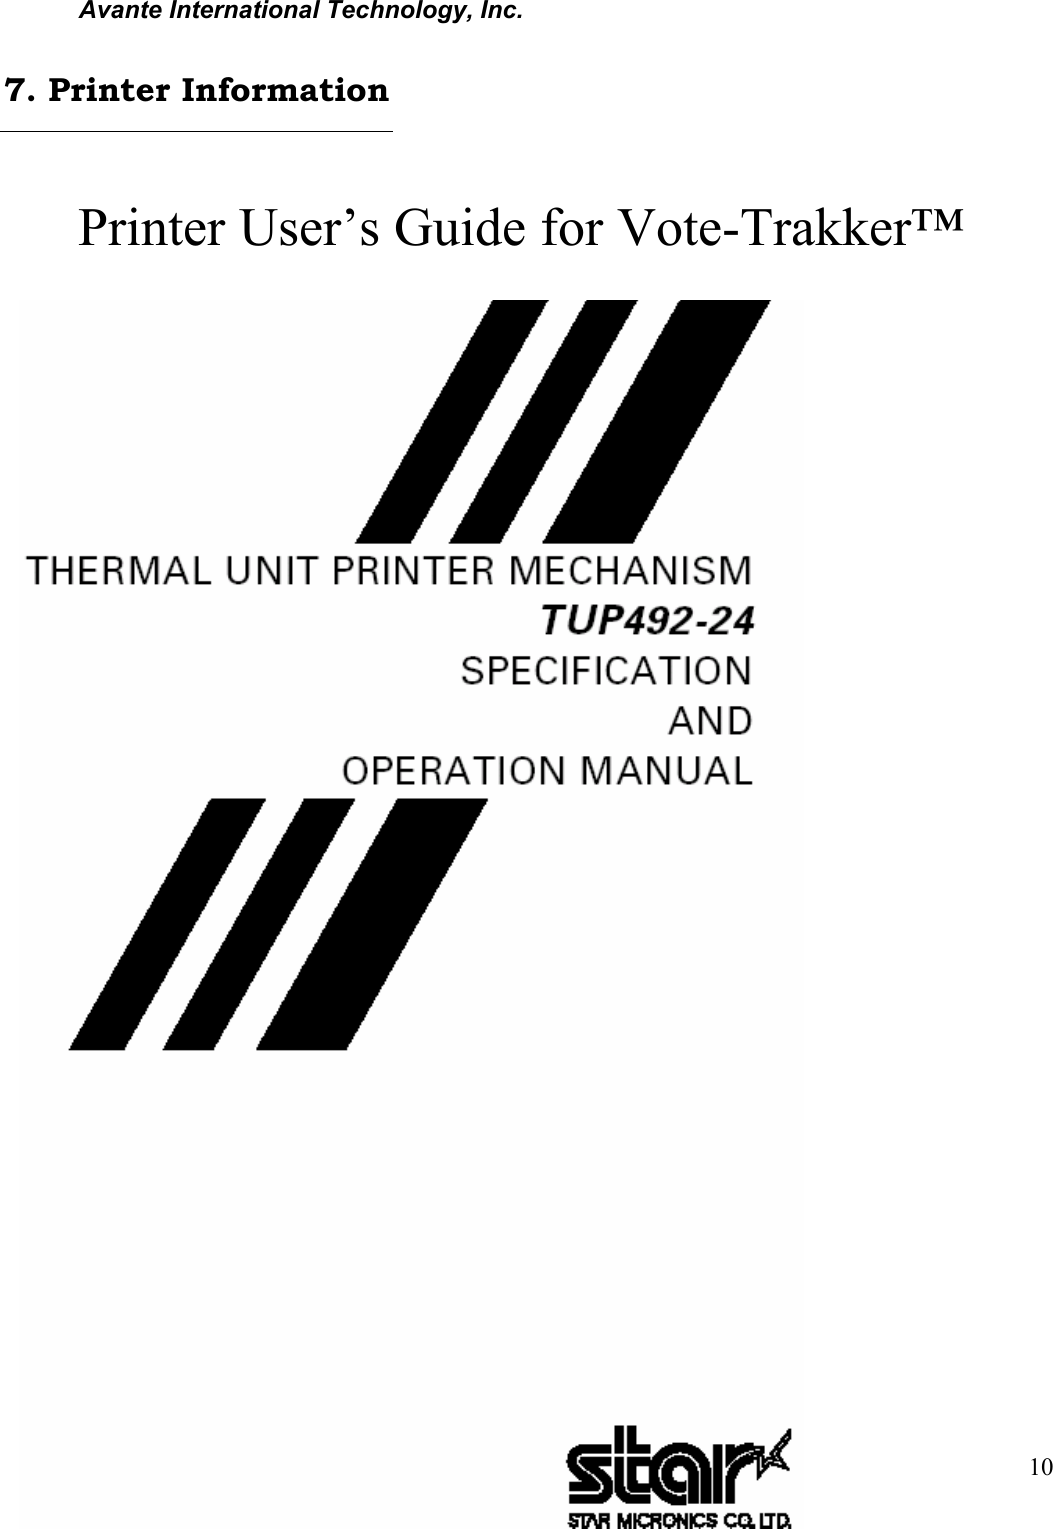 Avante International Technology, Inc.  Version 4.4.3  10 Printer User’s Guide for Vote-Trakker™7. Printer Information 